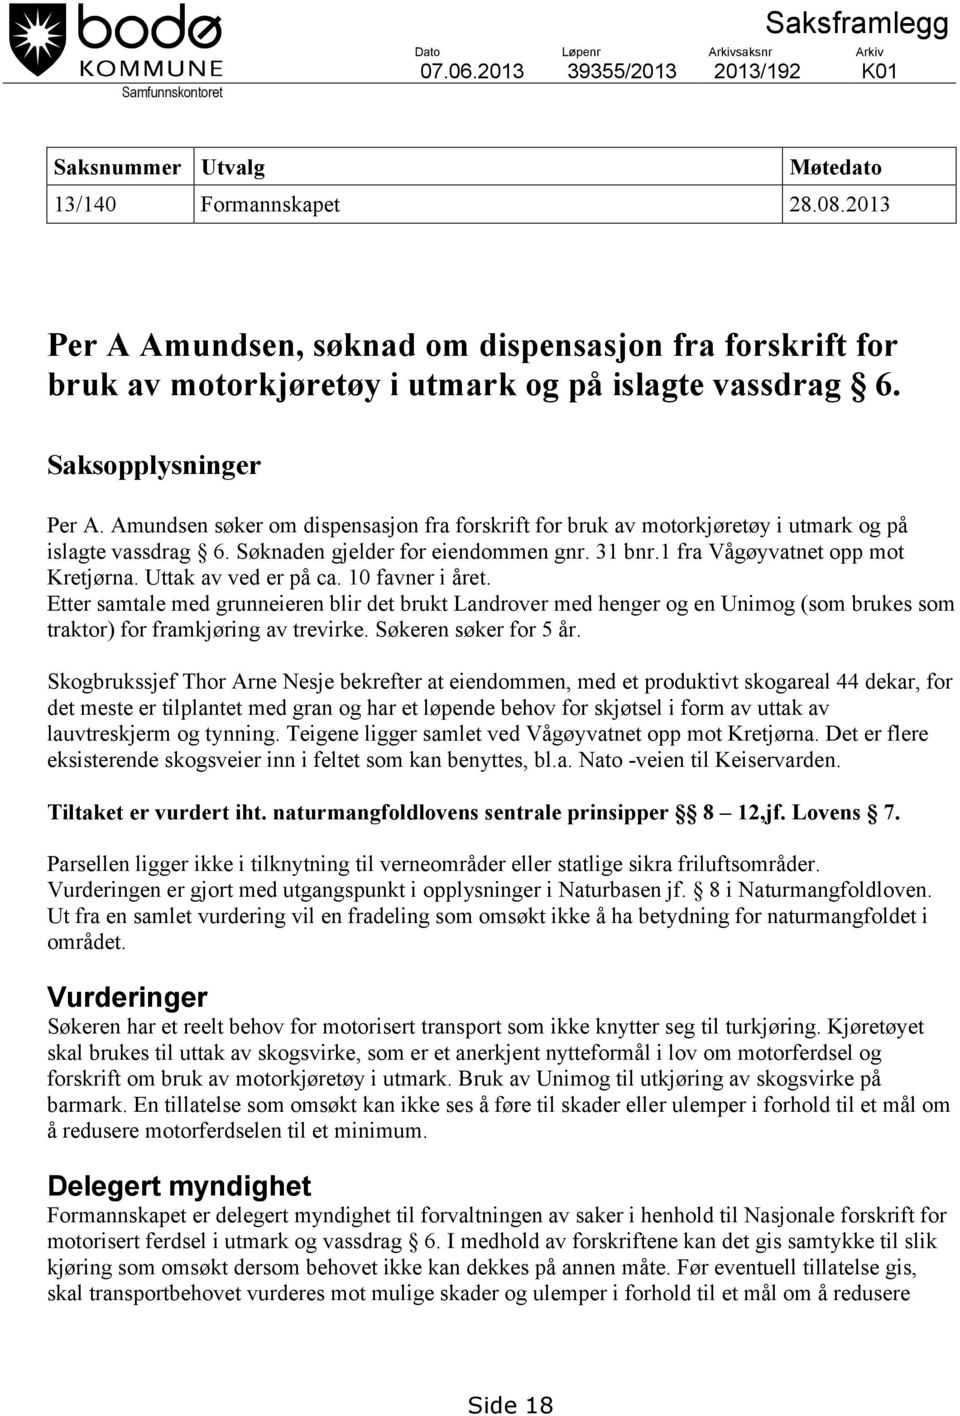 Amundsen søker om dispensasjon fra forskrift for bruk av motorkjøretøy i utmark og på islagte vassdrag 6. Søknaden gjelder for eiendommen gnr. 31 bnr.1 fra Vågøyvatnet opp mot Kretjørna.